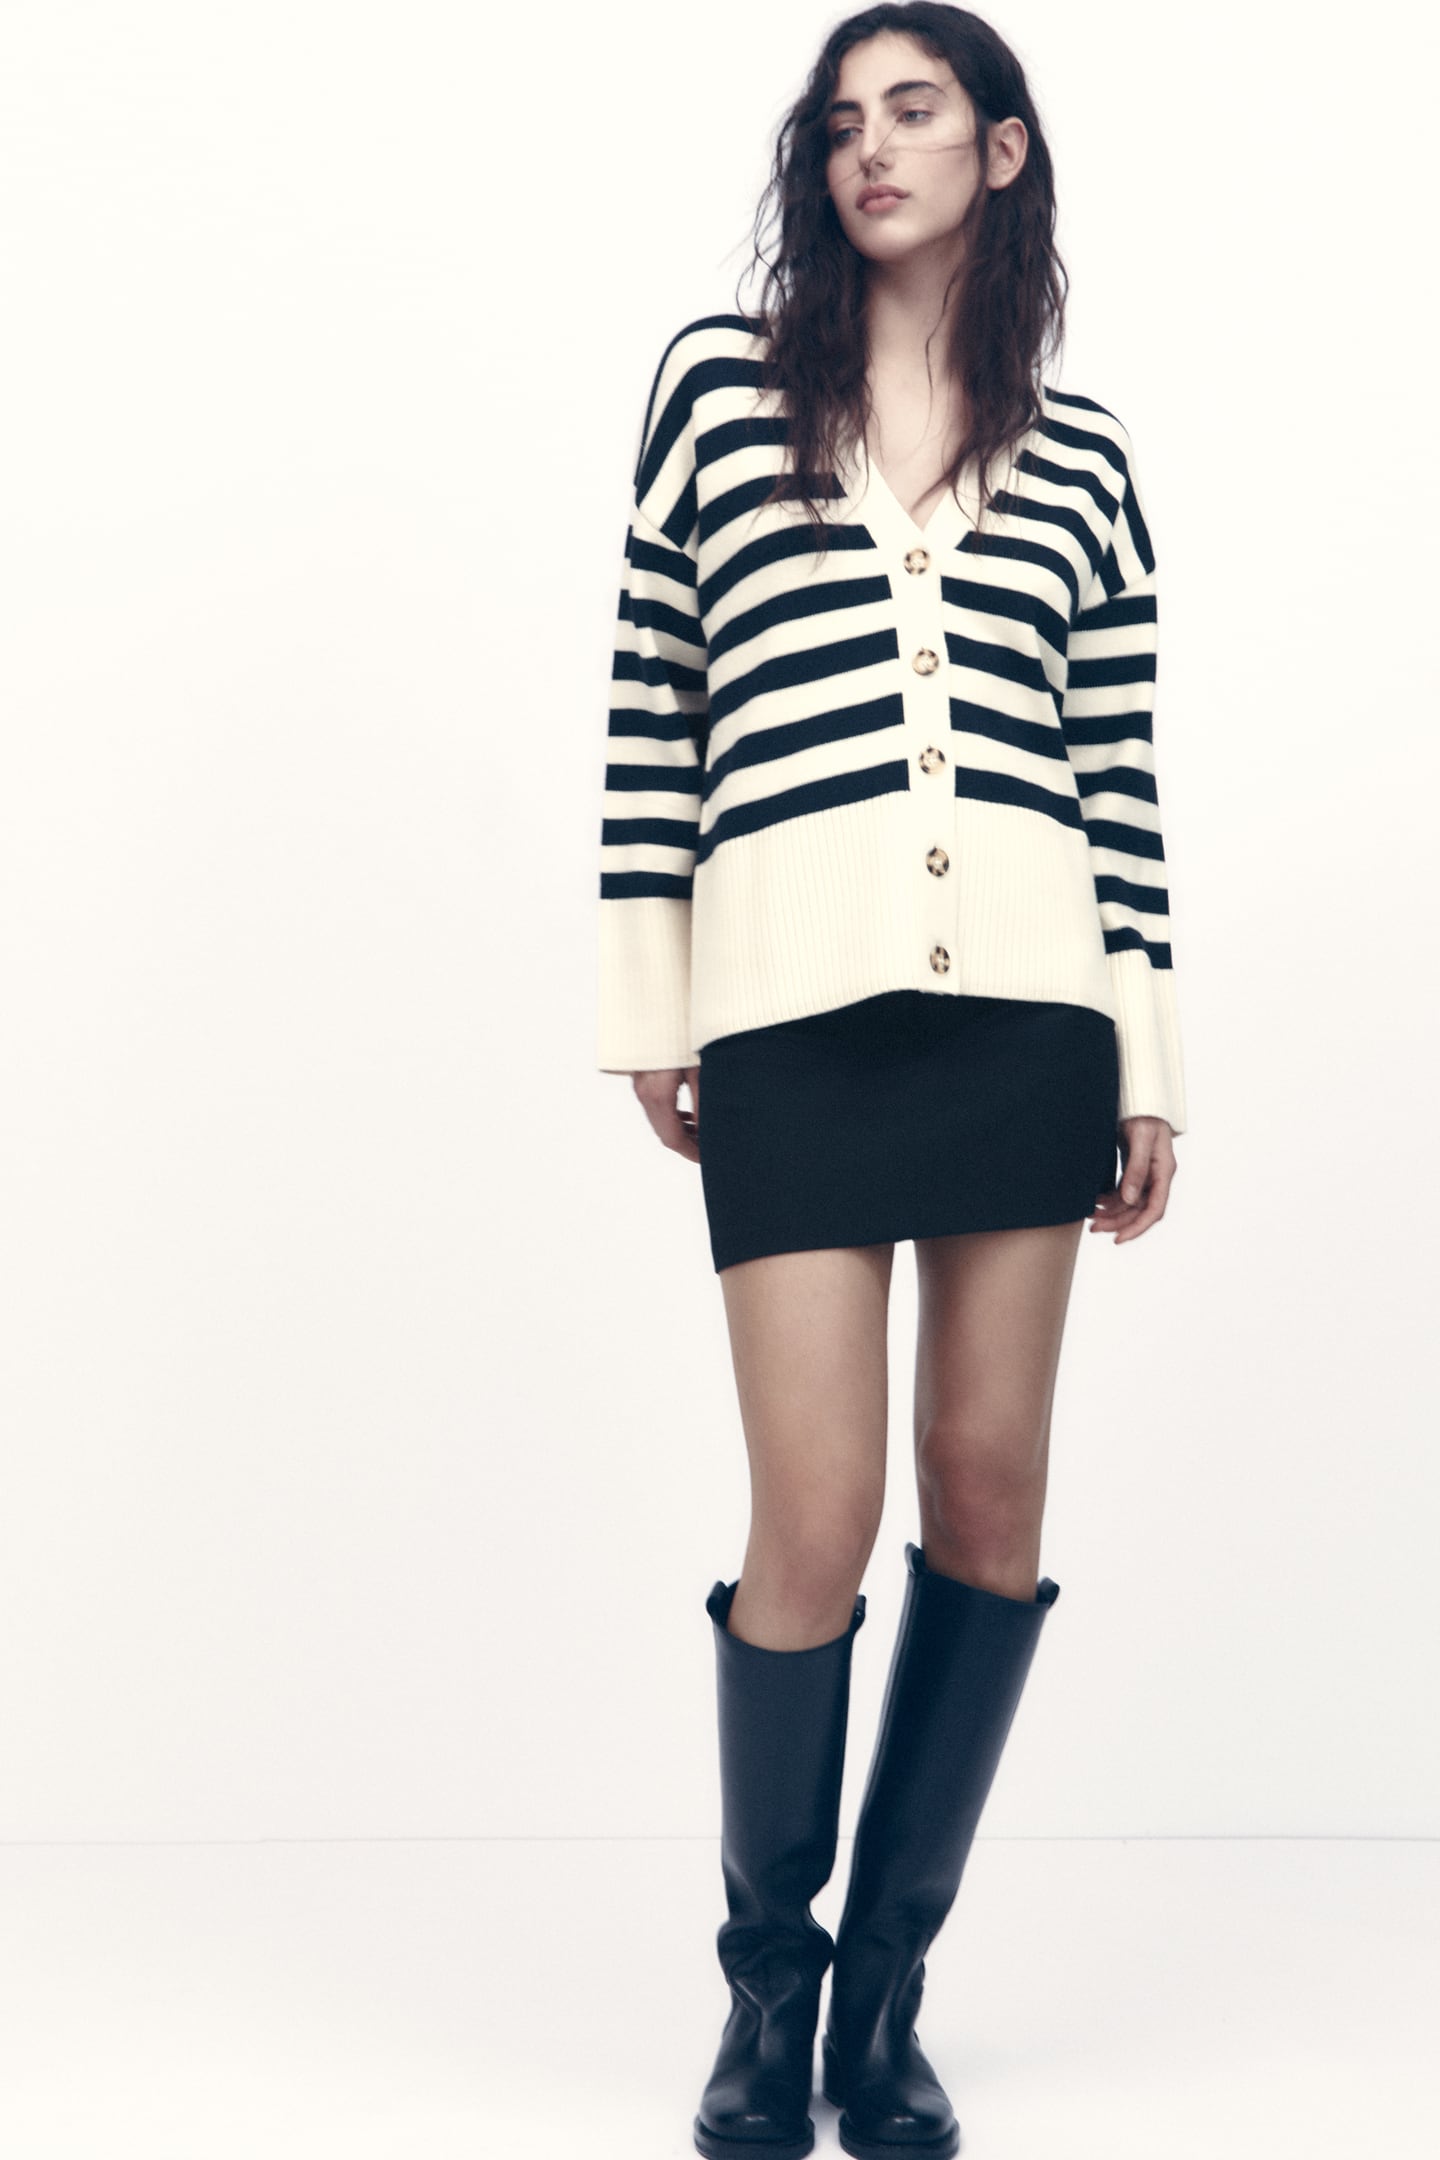 model wearing a striped cardigan from Zara